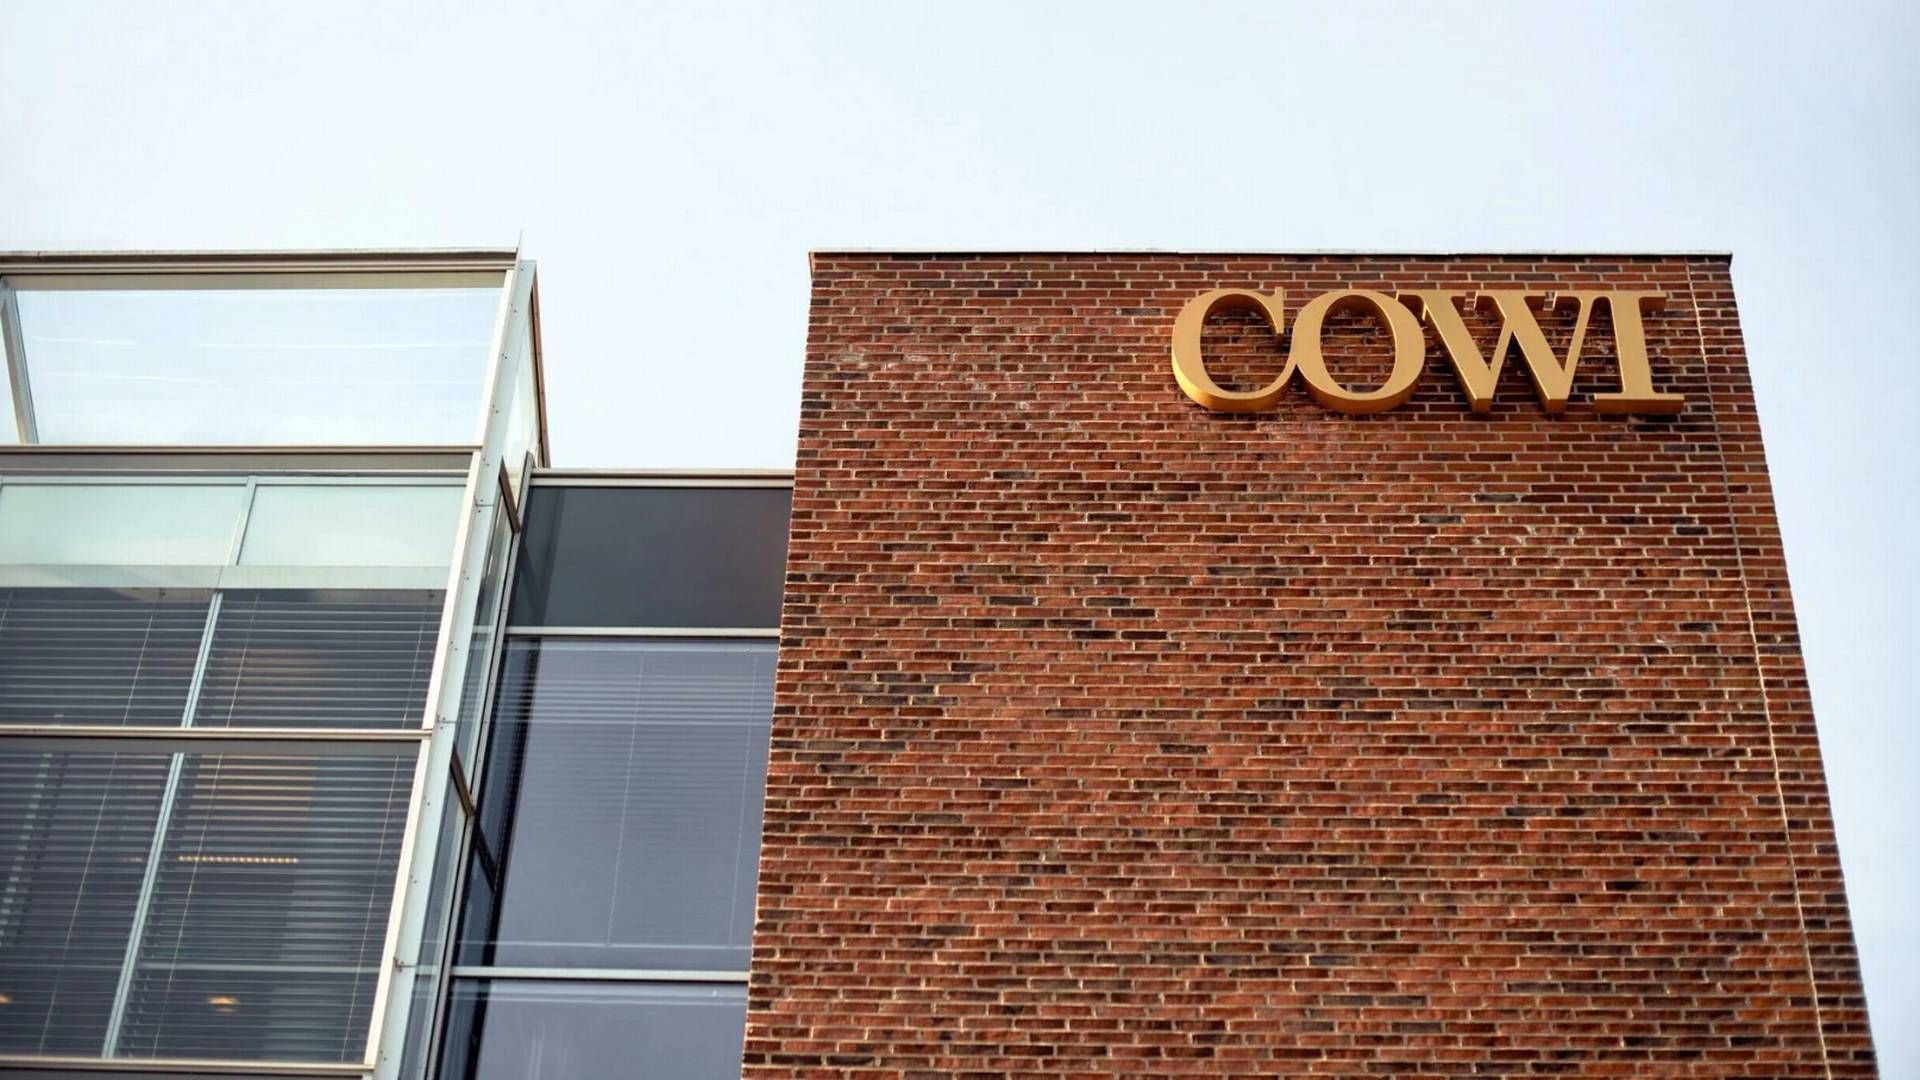 Cowi's headquarters in Greater Copenhagen. | Photo: Cowi/pr